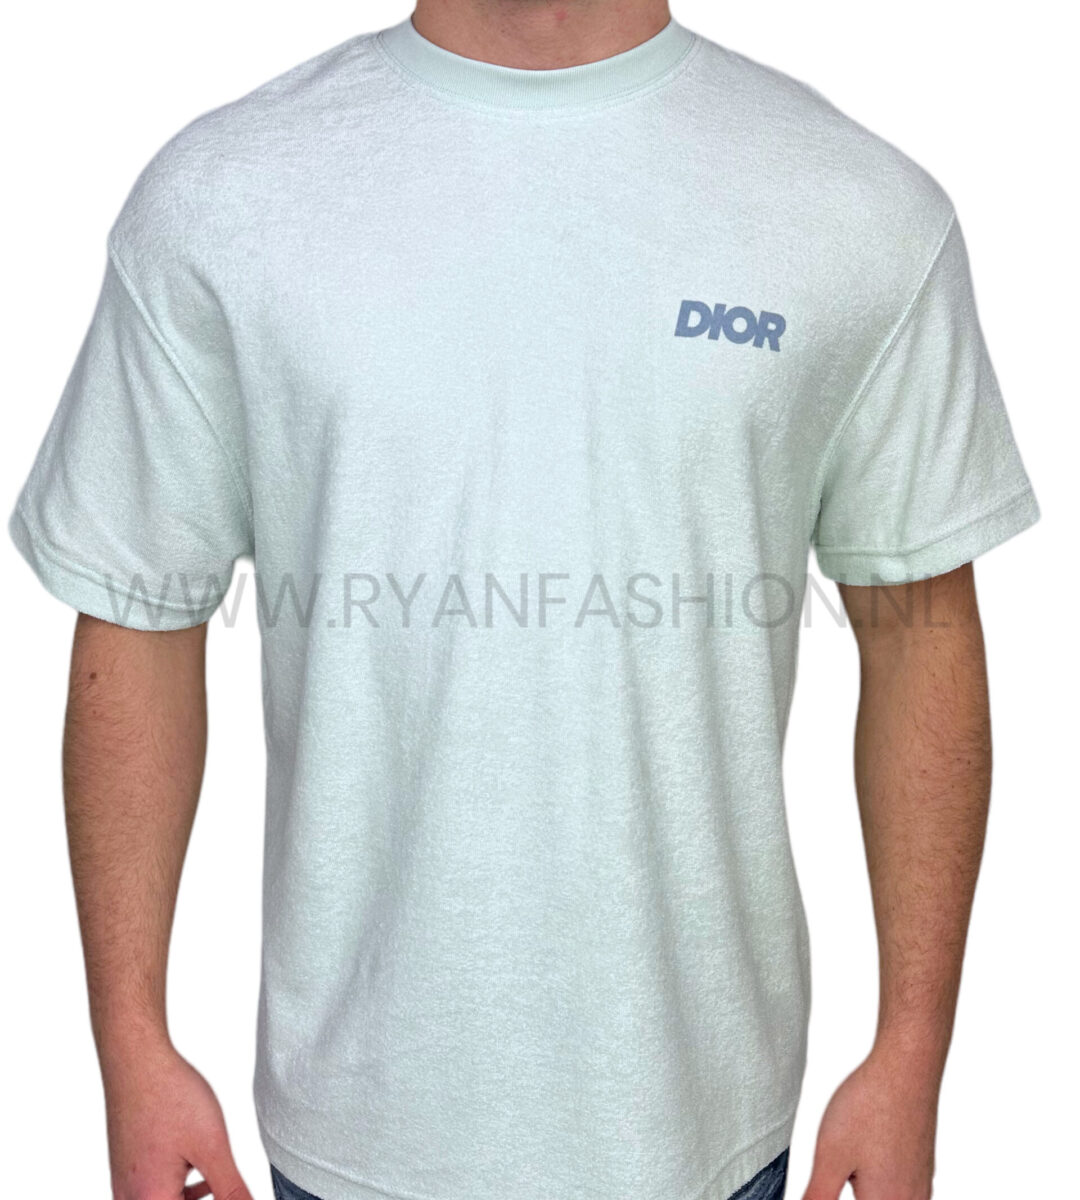 Dior Badstof T-Shirt Lichtblauw